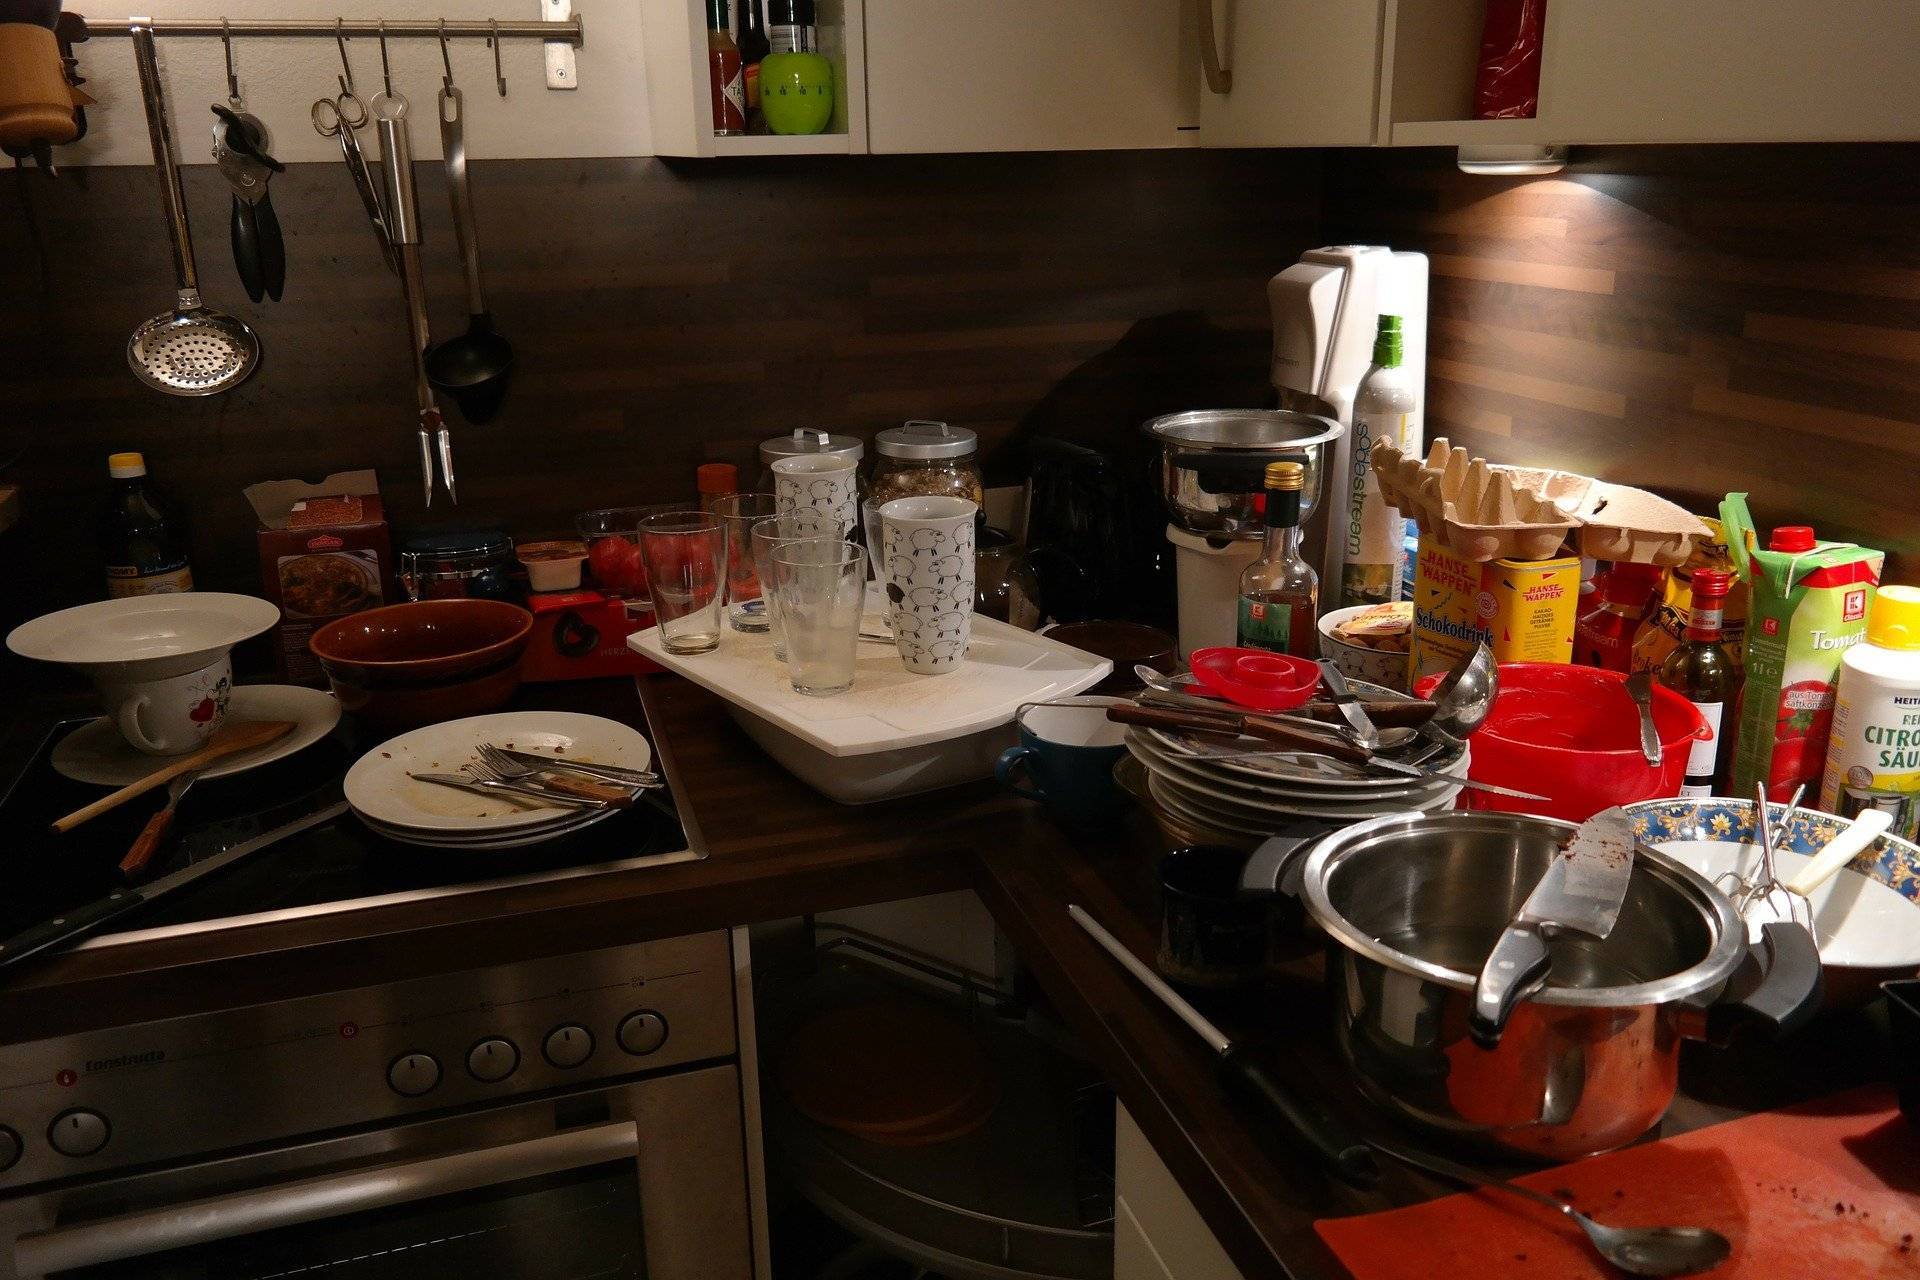 Кухня как с картинки. 4 лайфхака, как сделать вашу кухню визуально привлекательной | дом, в который хочется приходить